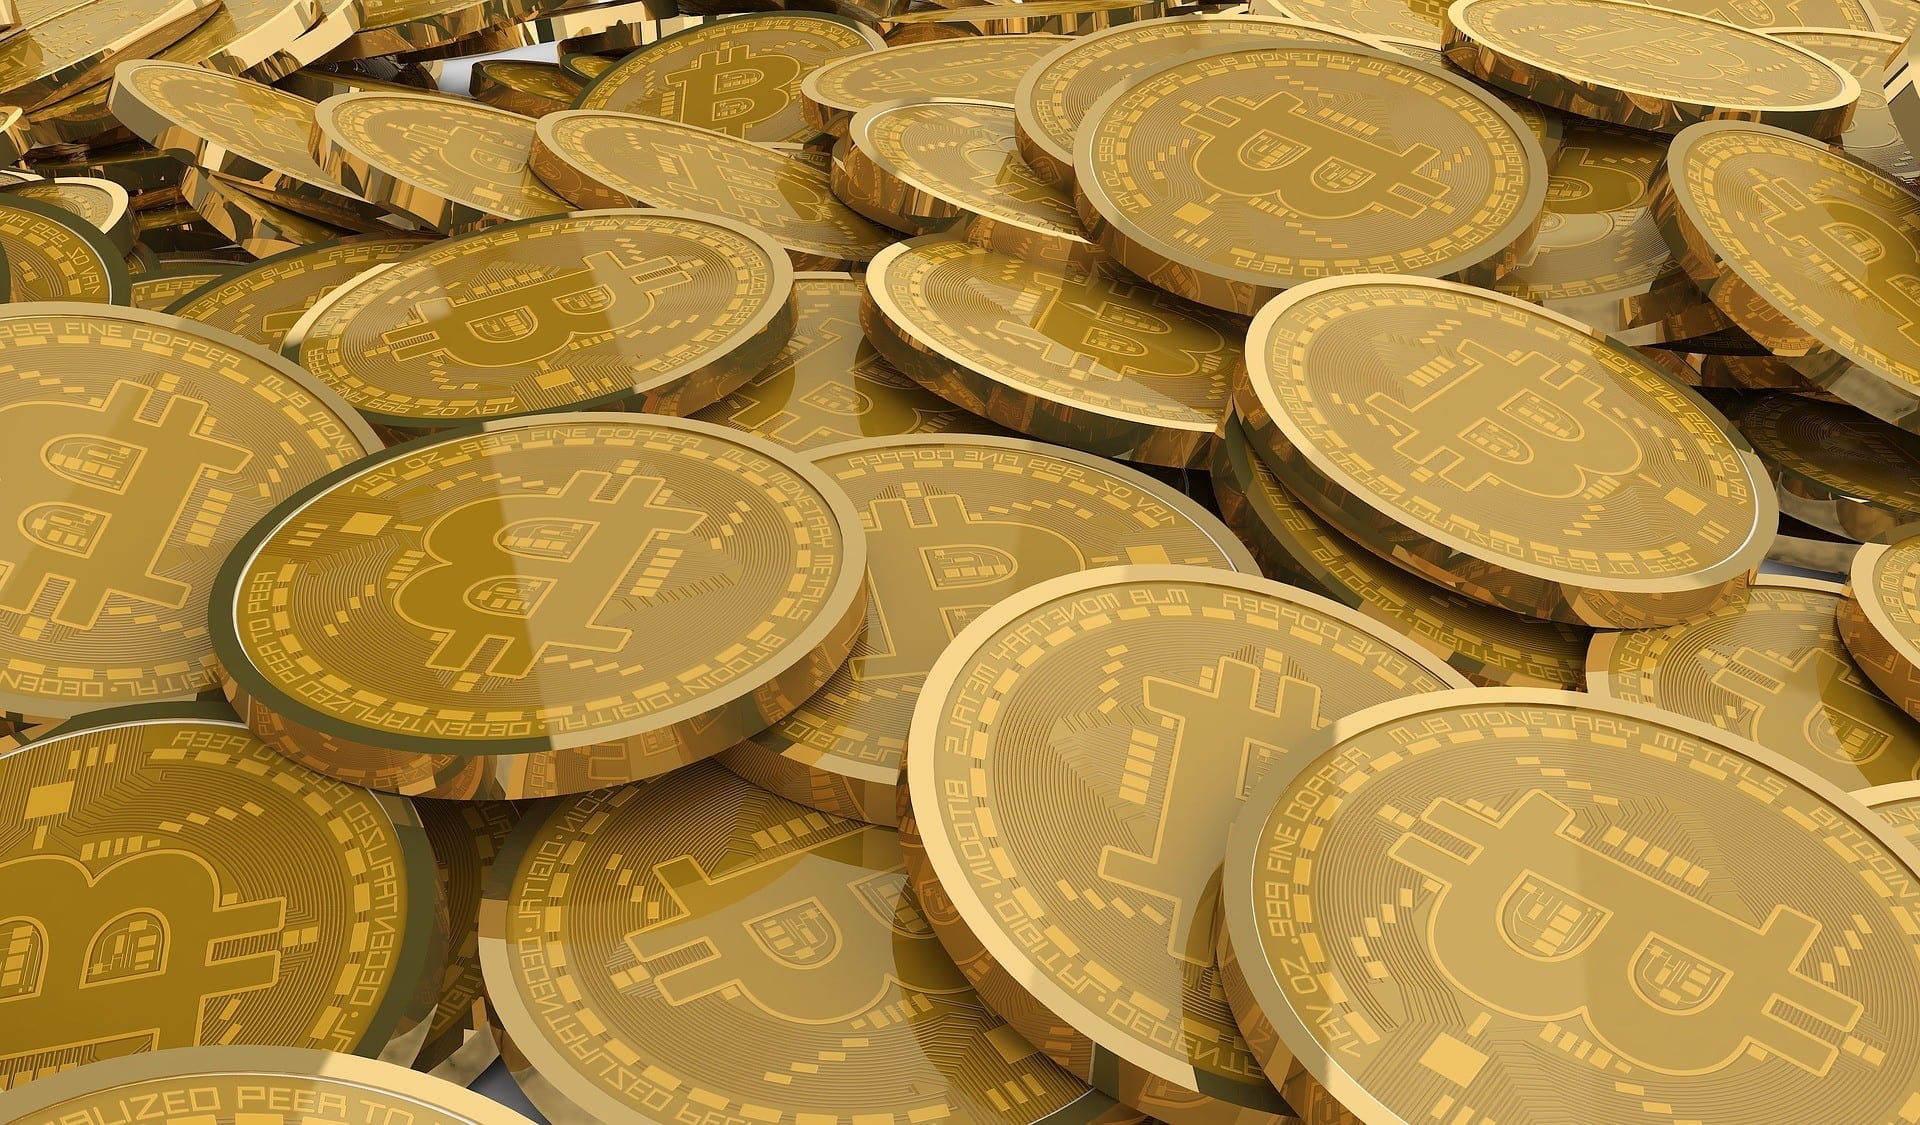 Bitcoin geldautomaten worden strenger gereguleerd